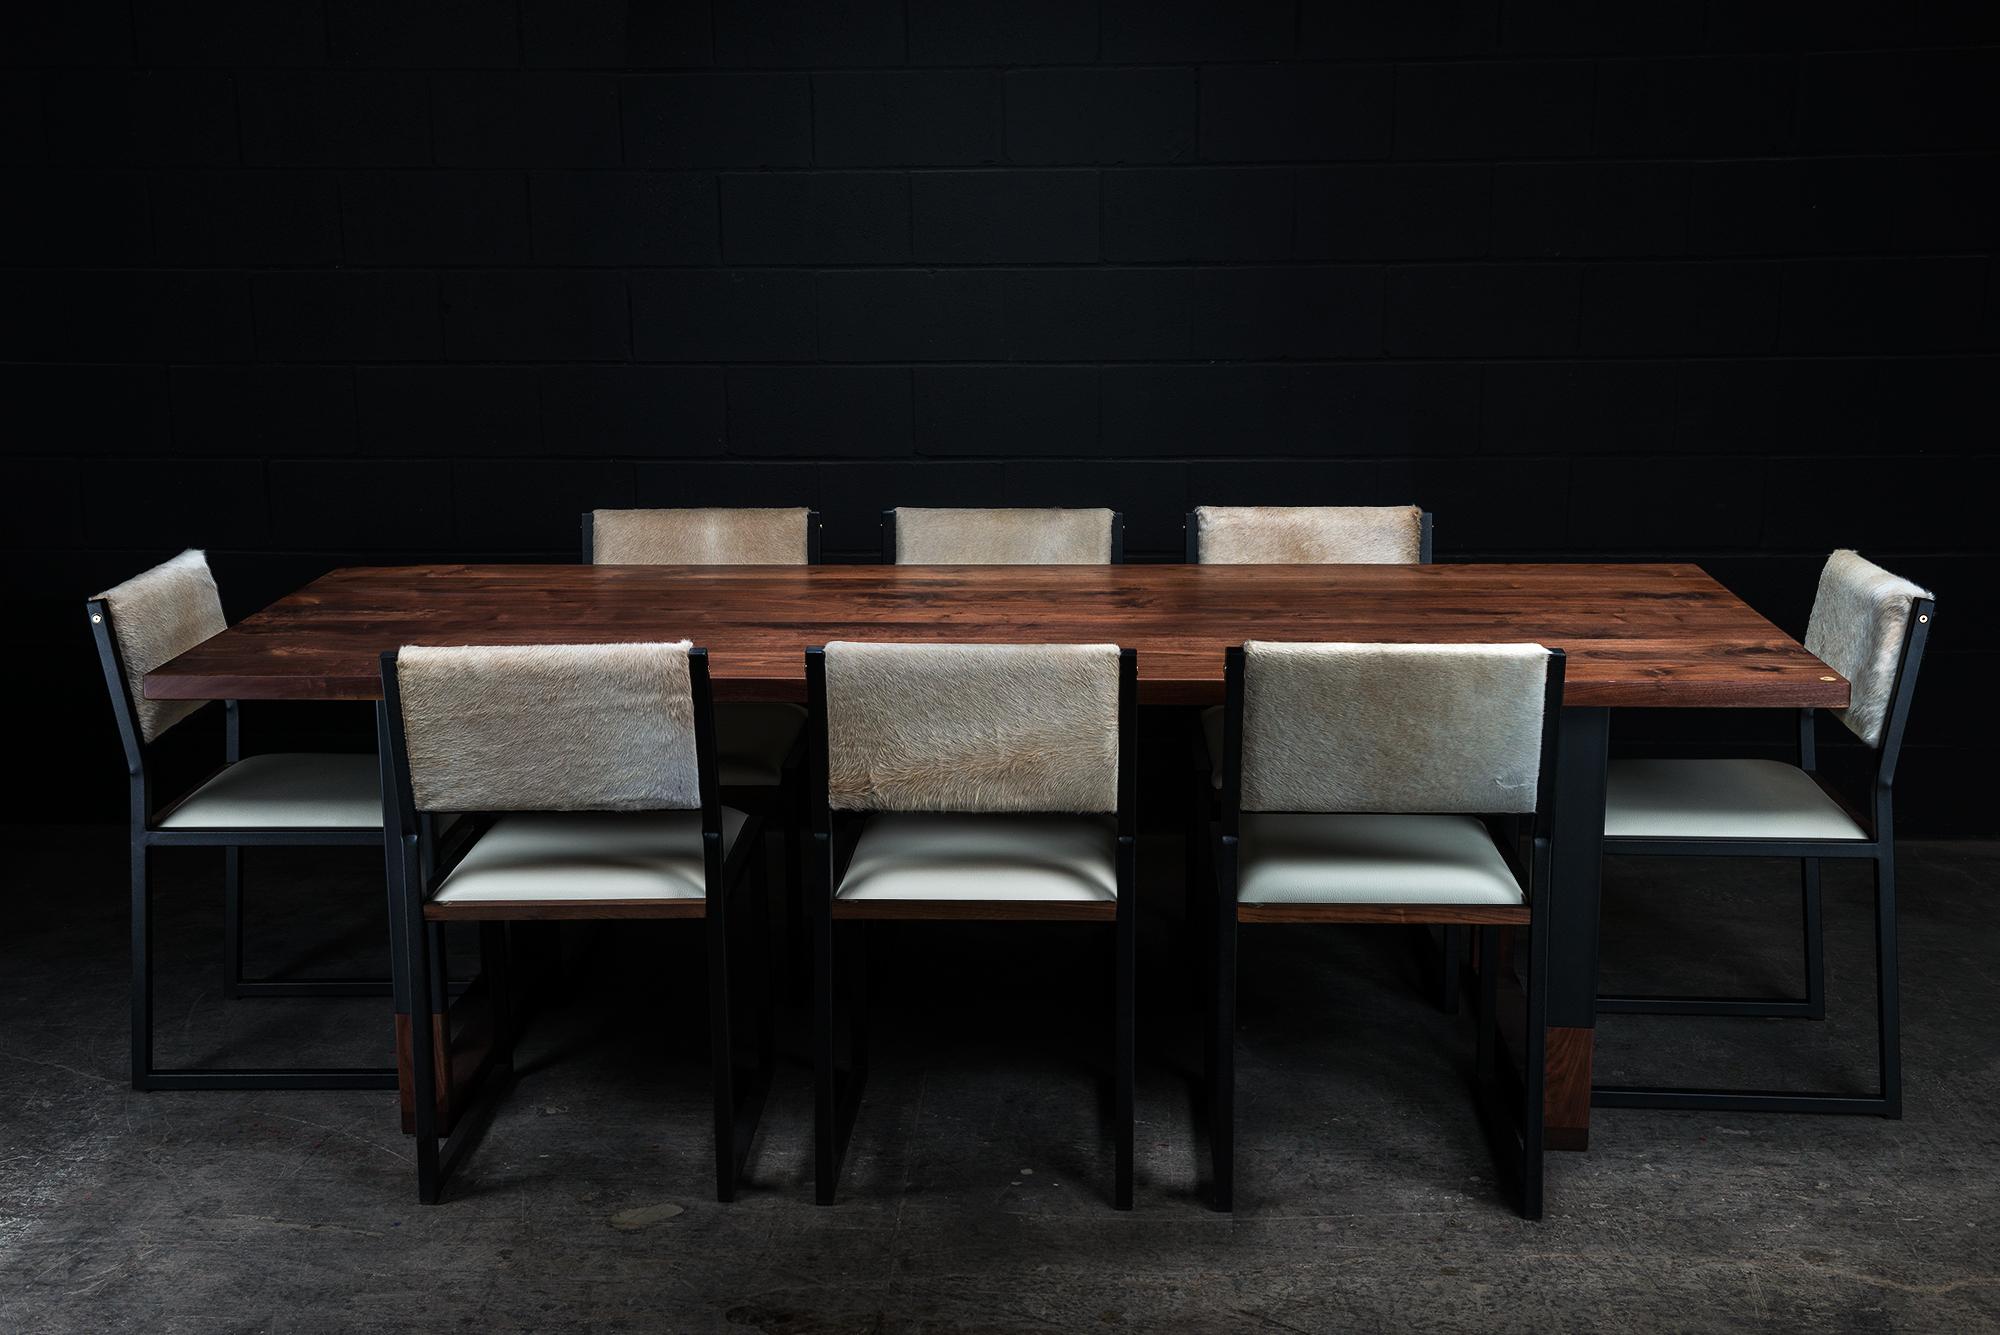 Der Richmond ist ein eleganter, zeitgenössischer Esstisch, der auf Bestellung aus massivem, handverlesenem amerikanischem Hartholz handgefertigt wird und über unsere nahtlosen Hybridbeine verfügt. Der Tisch wurde von Hand mit Öl und Wachs